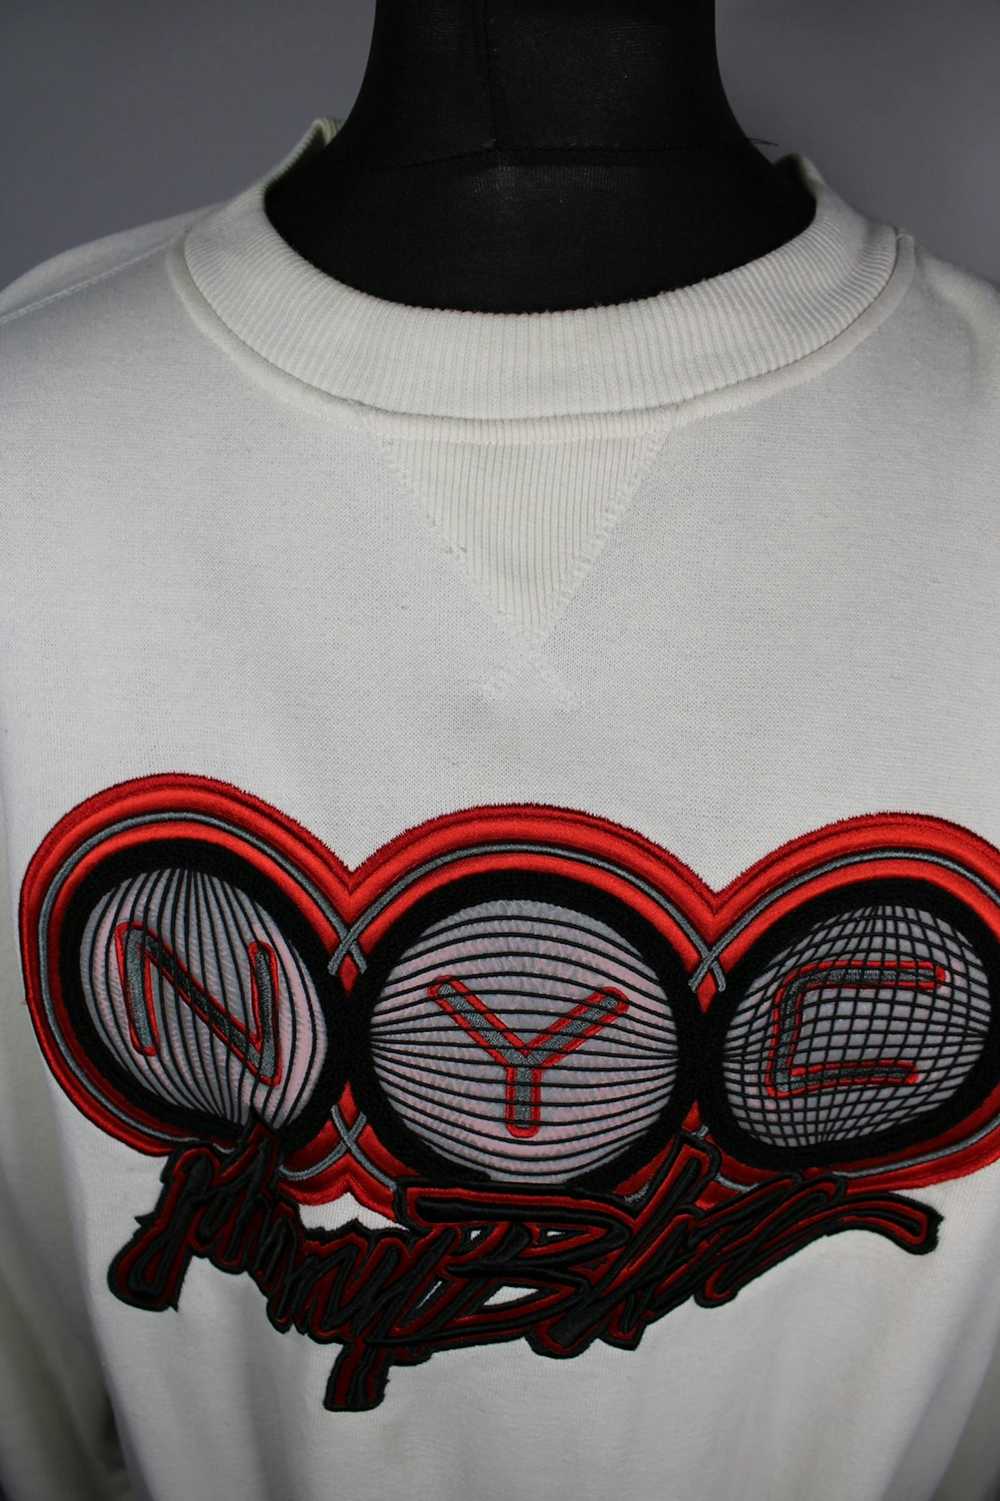 Method Method Man “Johnny Blaze” NYC sweatshirt - image 5